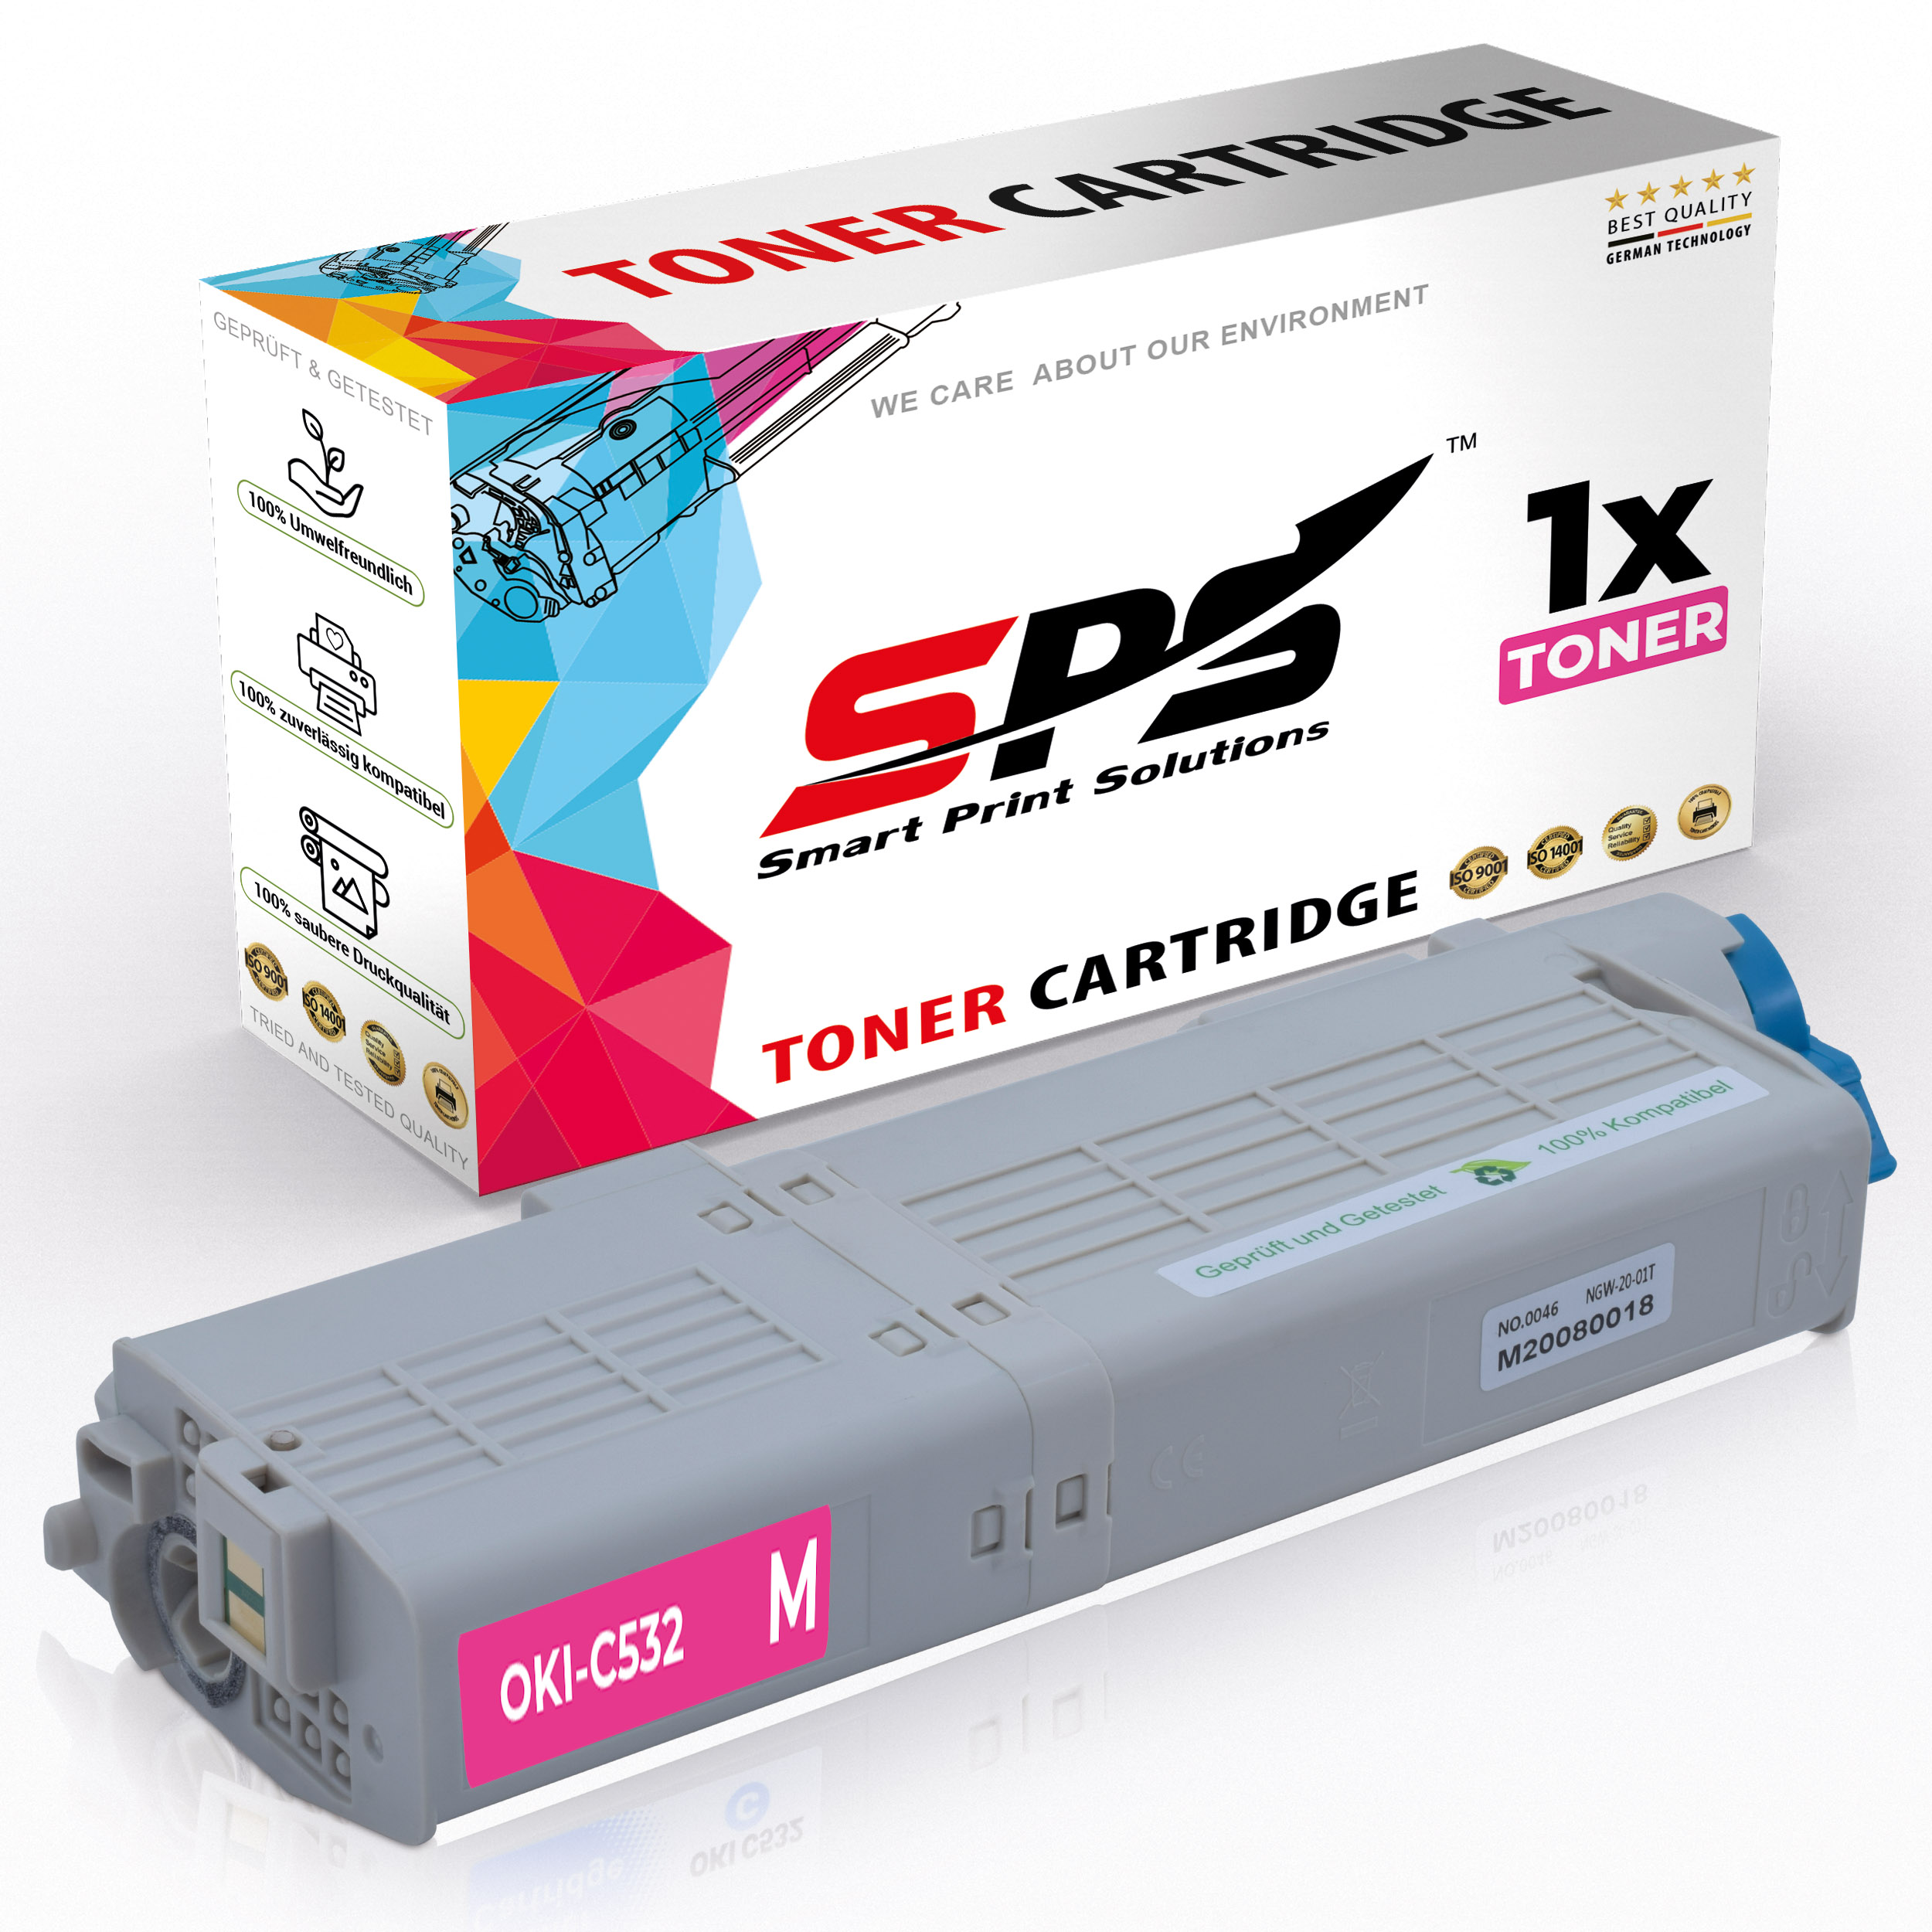 SPS S-16695 Toner / Magenta (C532 46490606 C542)